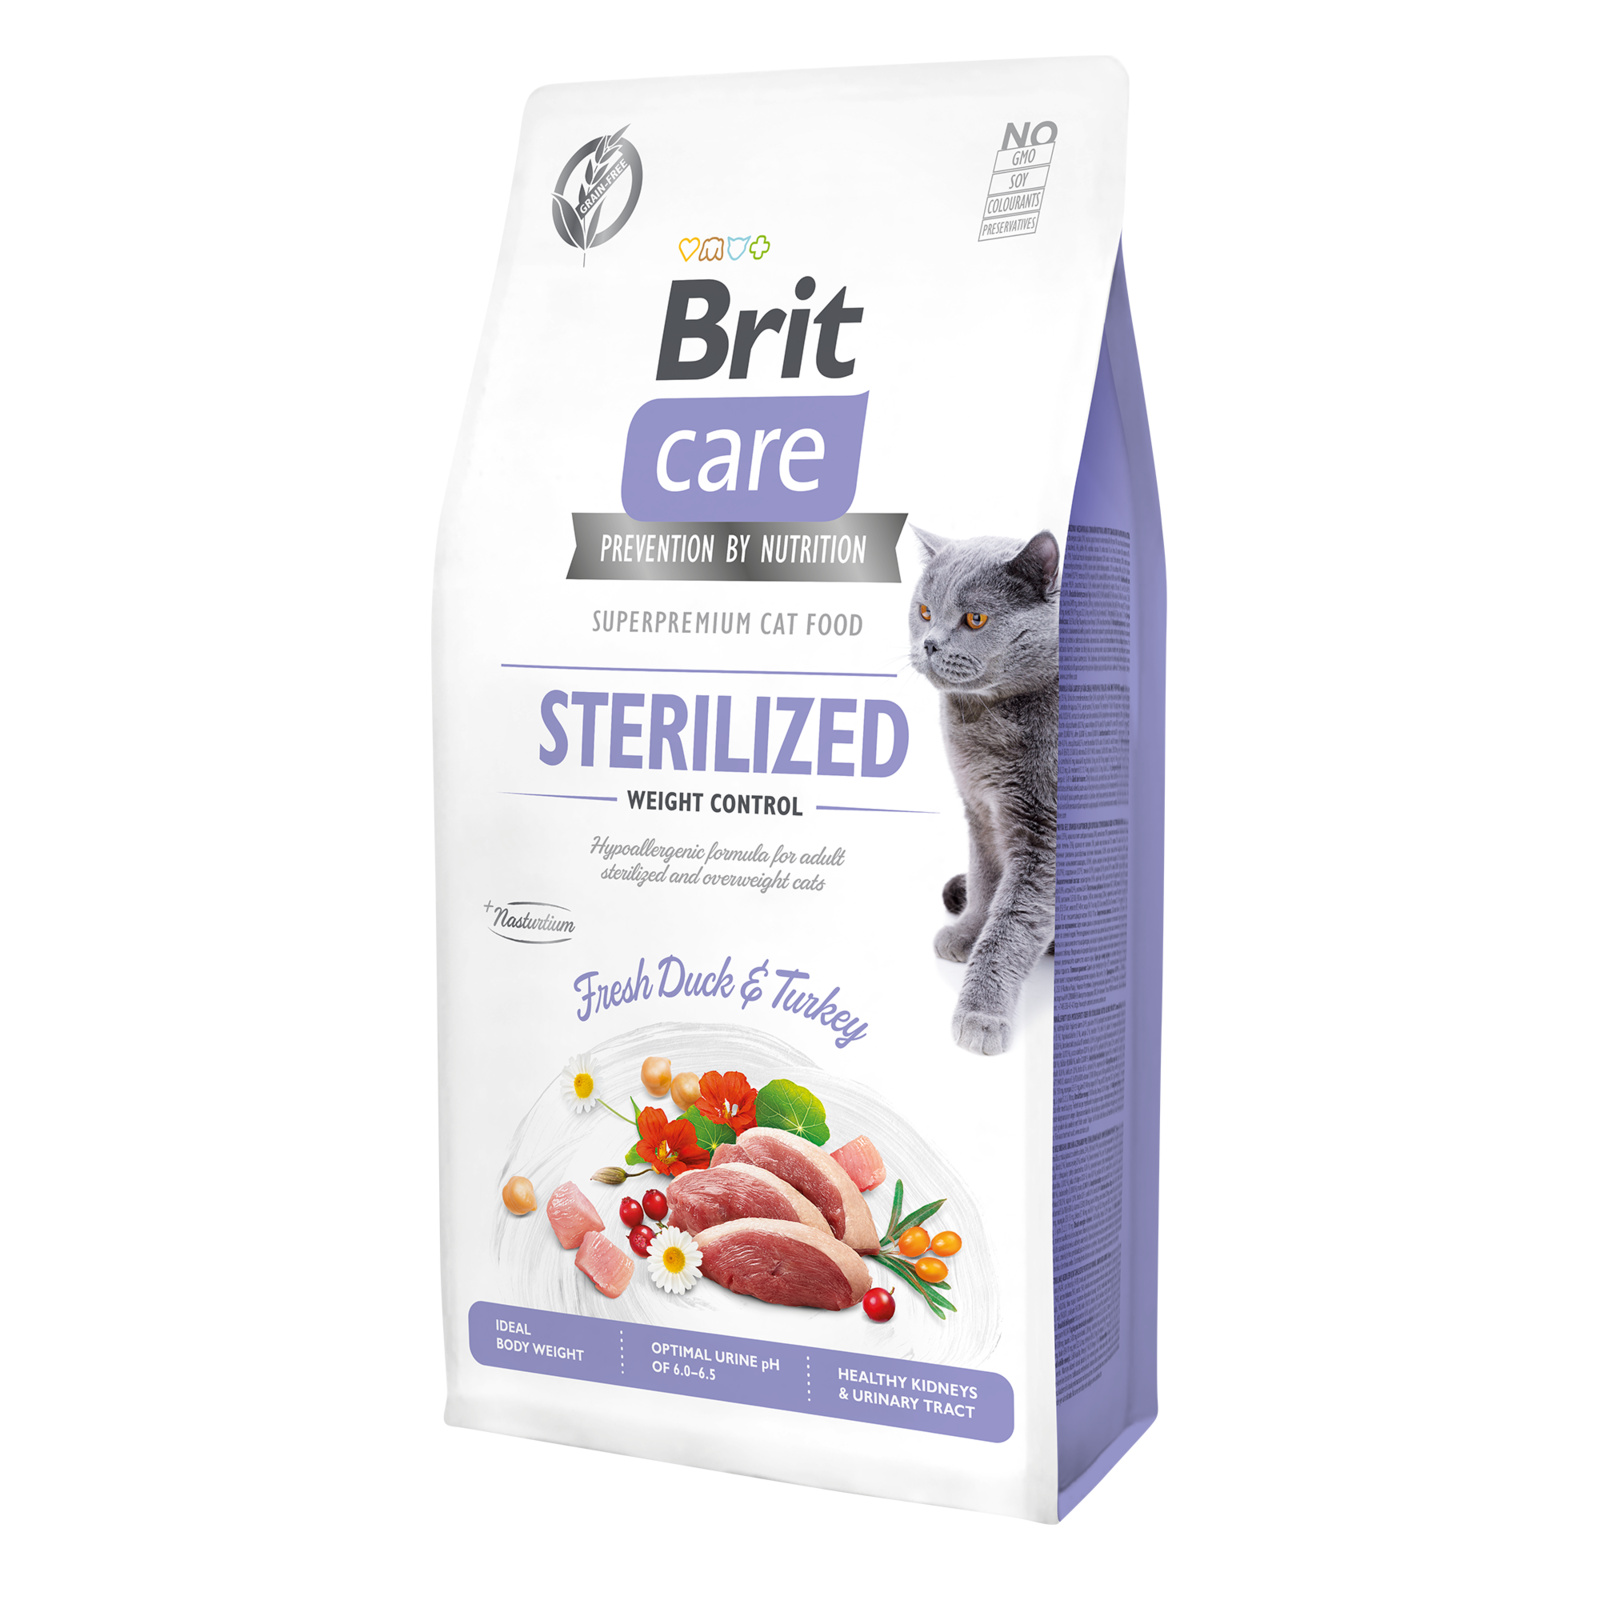 Корм Brit care Контроль веса: гипоаллергенный, со свежим мясом утки и индейки для стерилизованных кошек (7 кг) Brit - фото 3